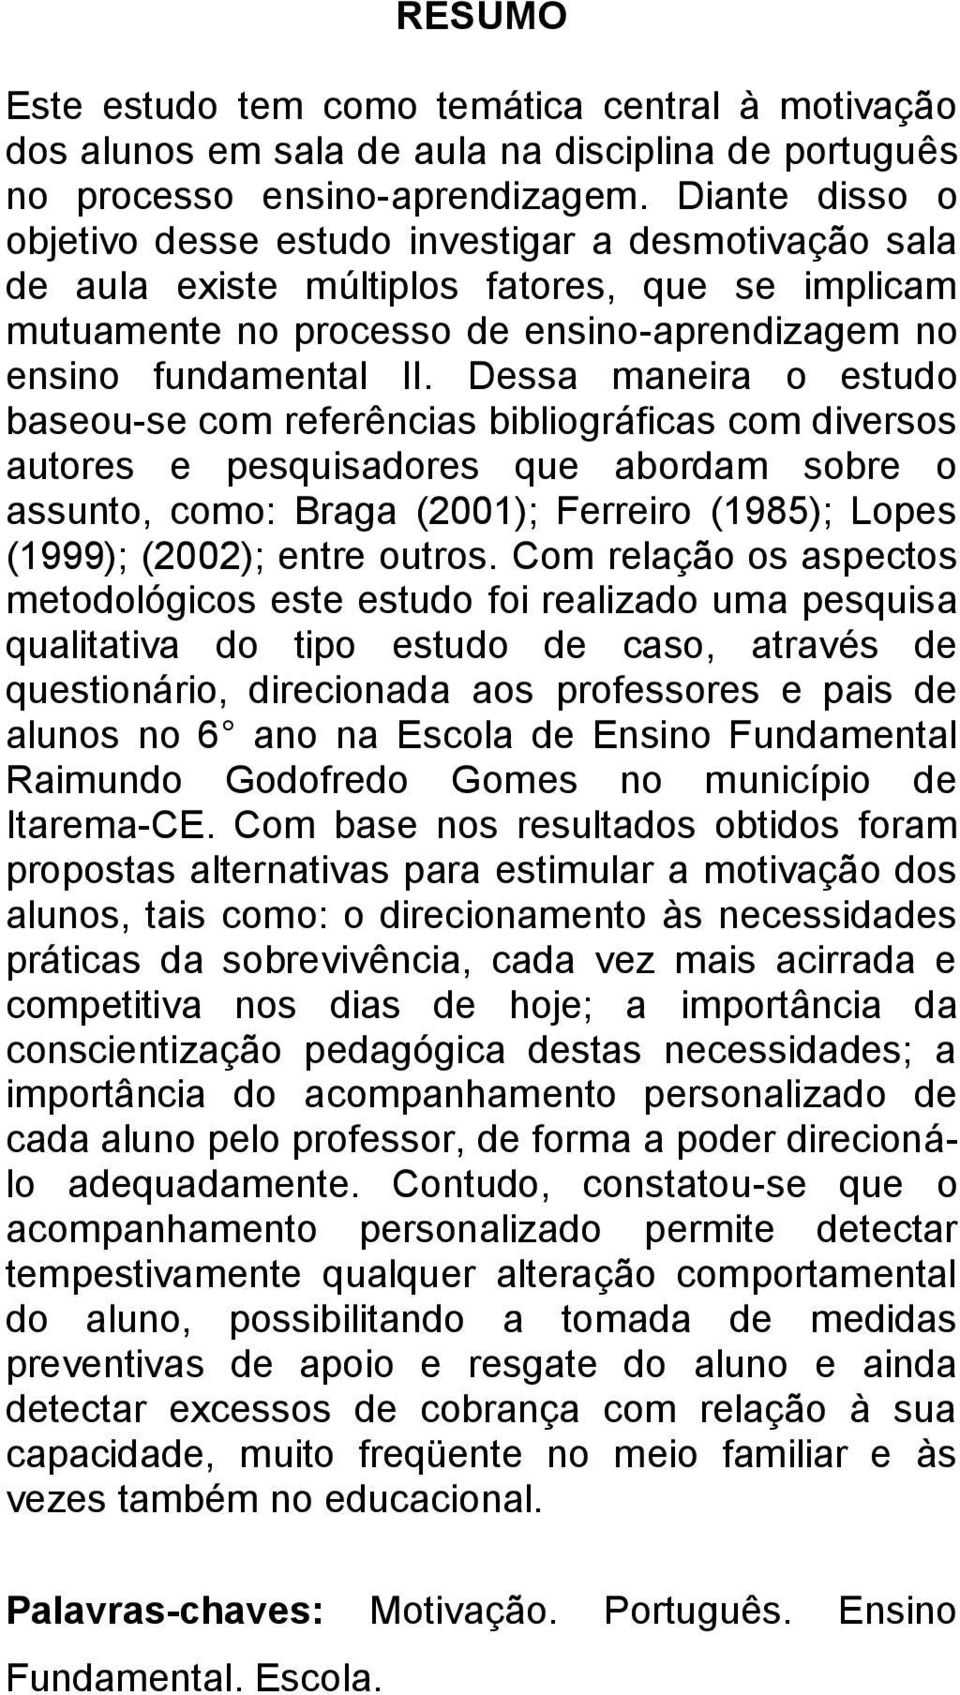 Dessa maneira o estudo baseou-se com referências bibliográficas com diversos autores e pesquisadores que abordam sobre o assunto, como: Braga (2001); Ferreiro (1985); Lopes (1999); (2002); entre